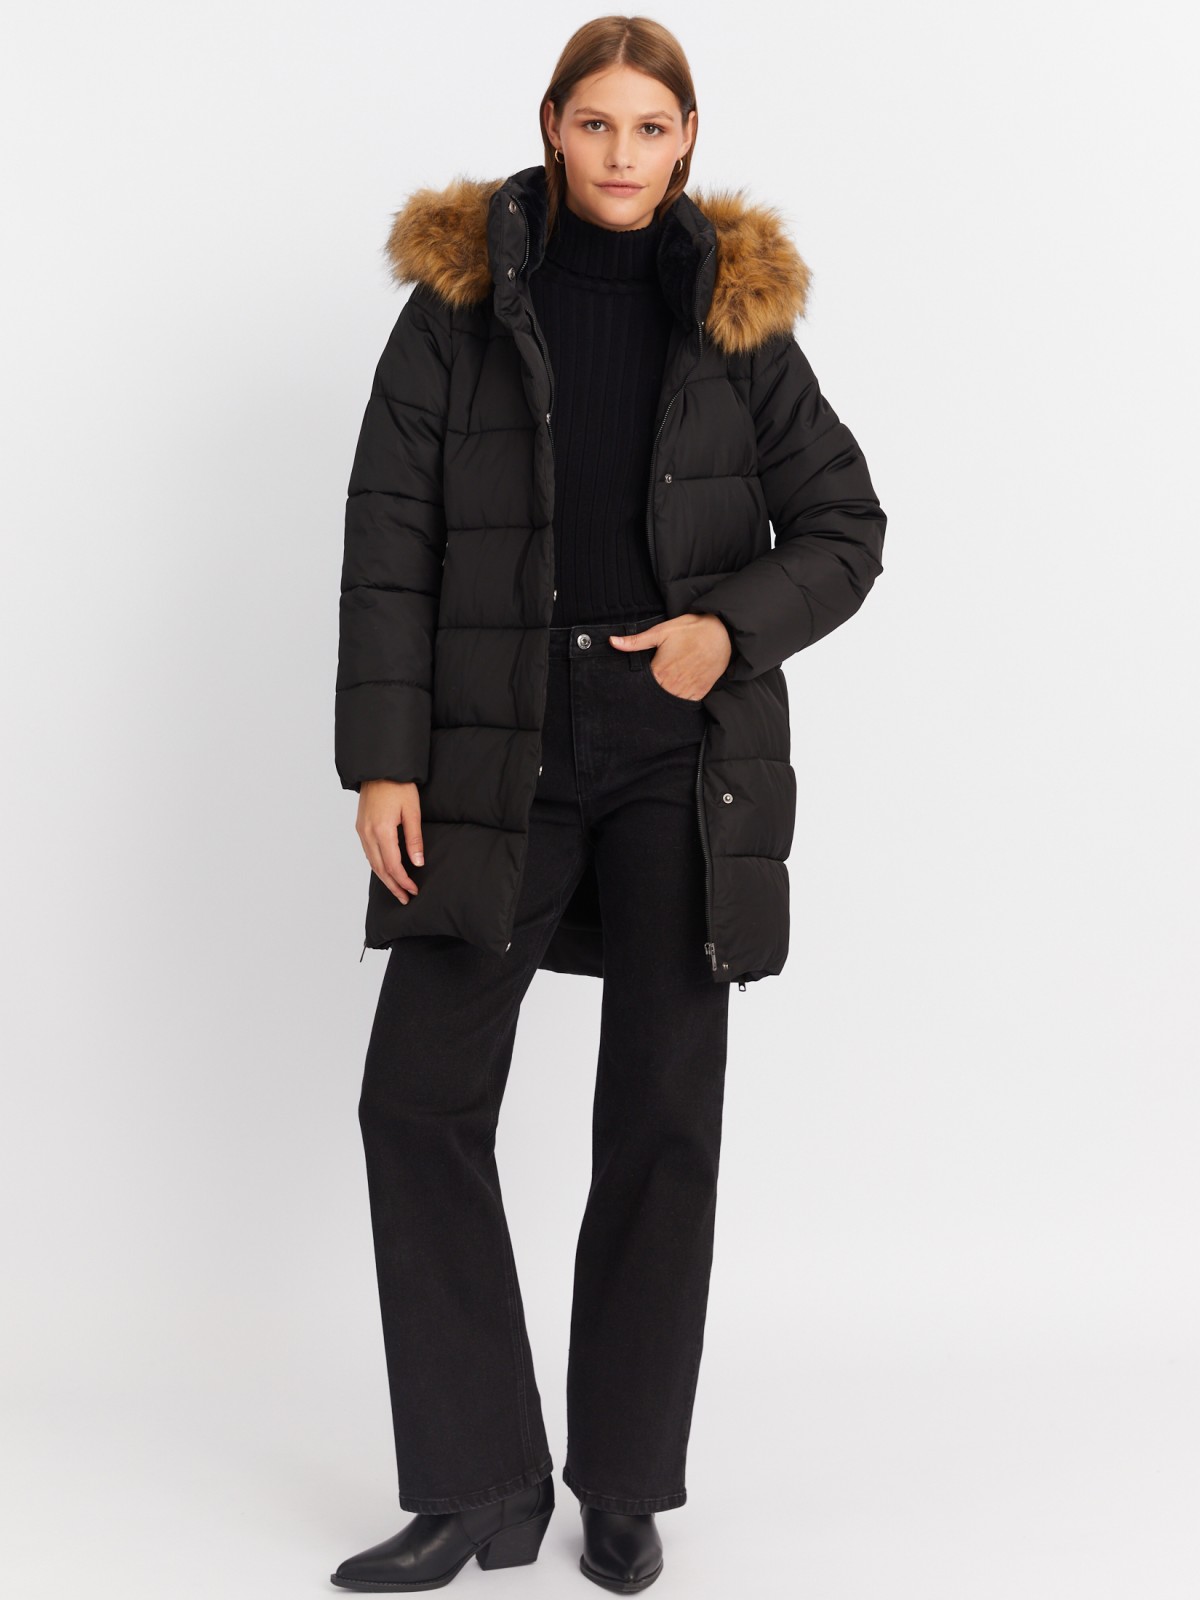 Тёплая куртка-пальто с капюшоном и боковыми шлицами на молниях zolla 022425212014, цвет черный, размер XS - фото 2